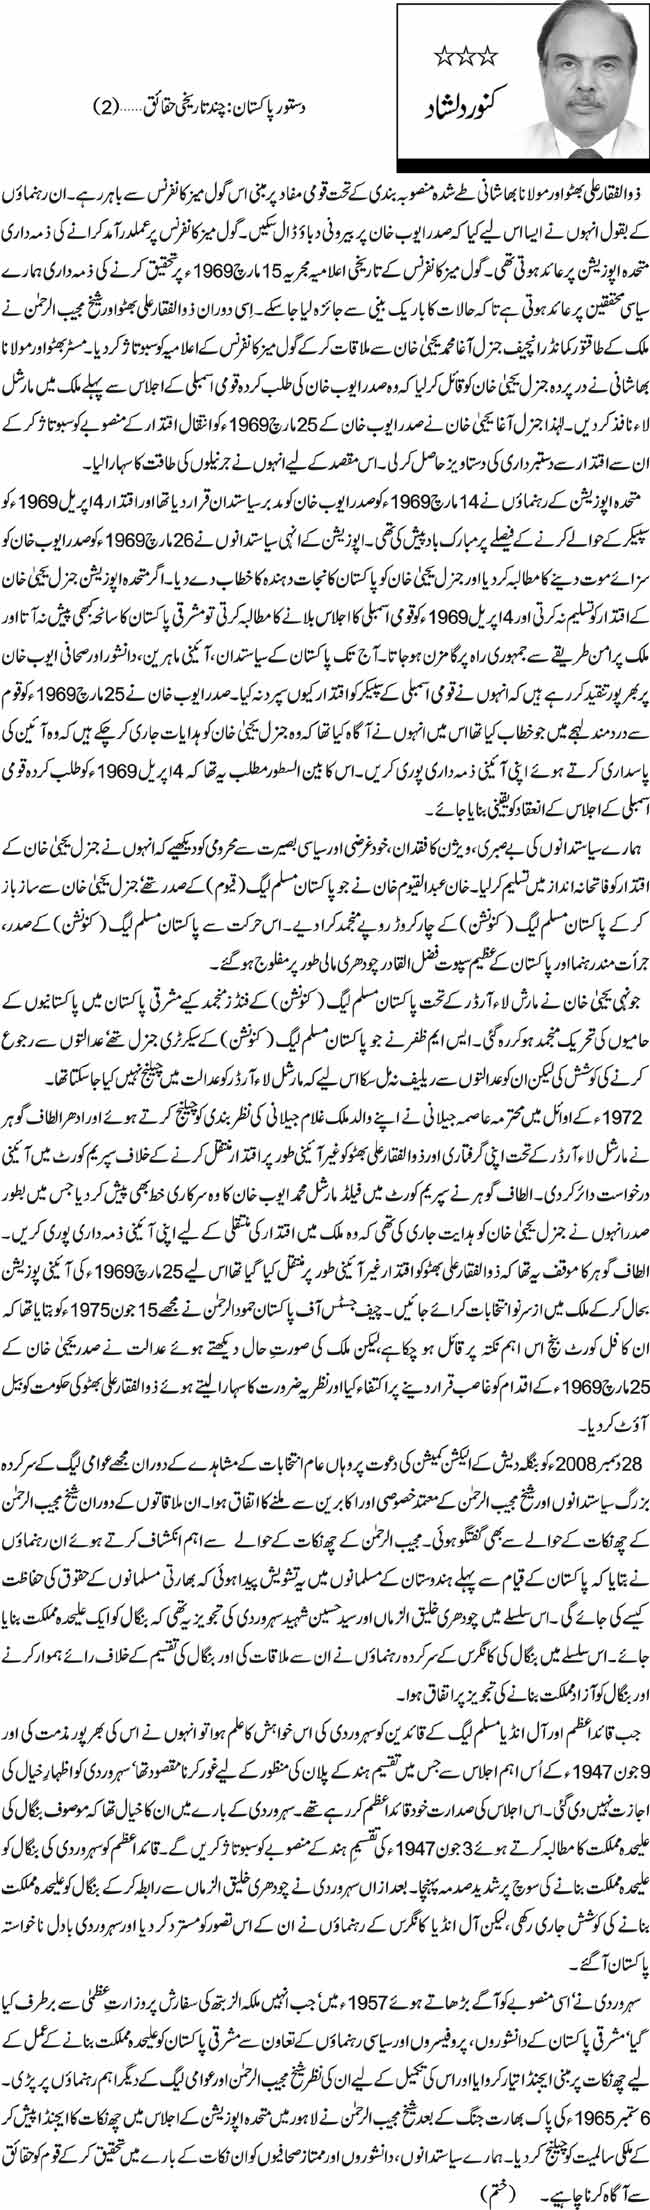 دستور پاکستان: چند تاریخی حقائق (2) 